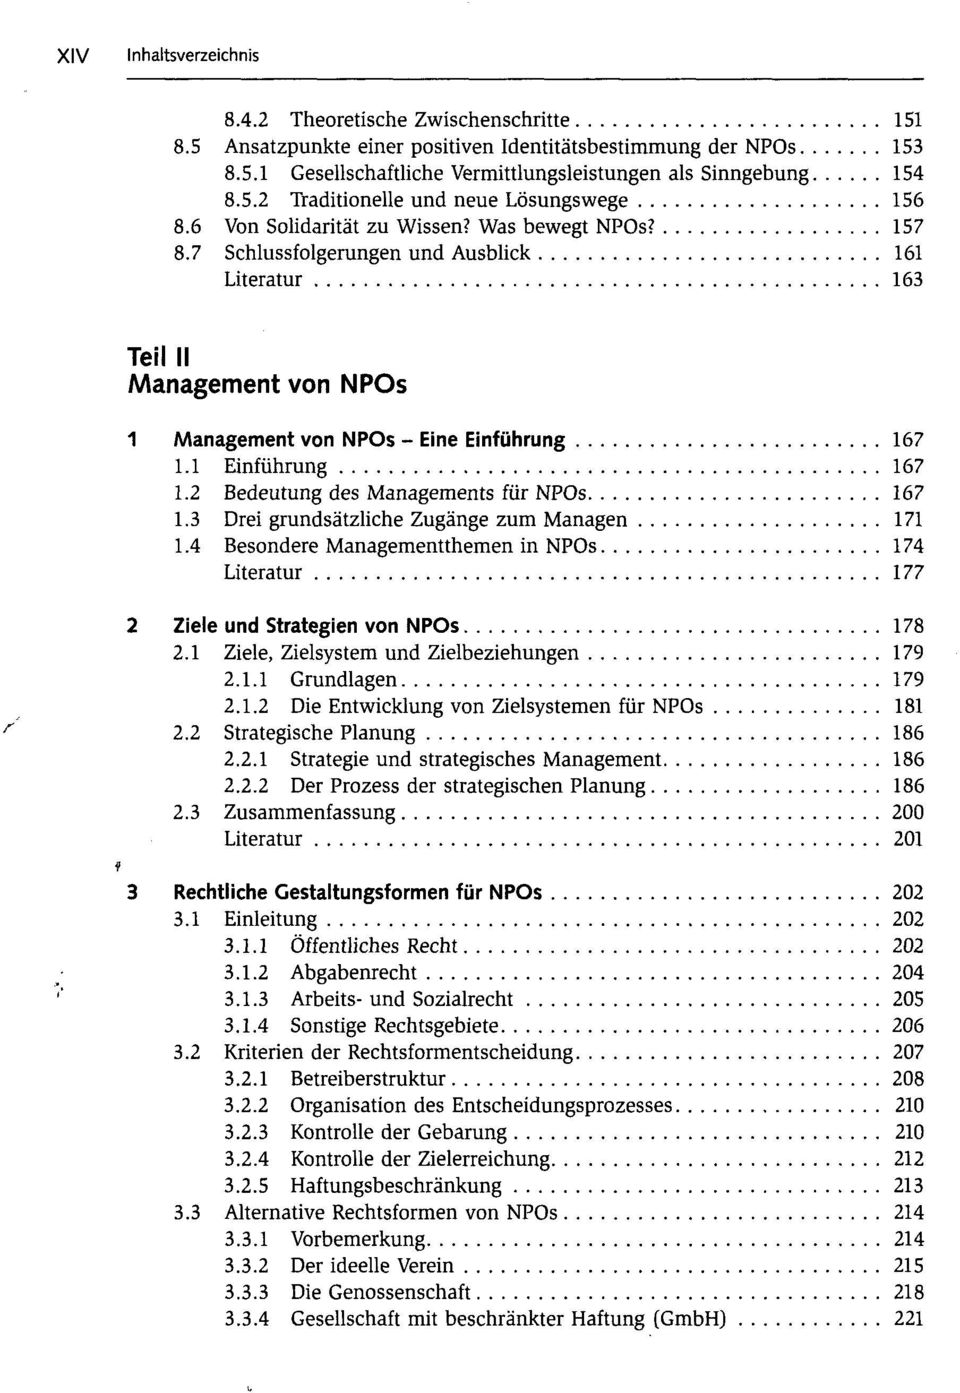 2 Bedeutung des Managements für NPOs 167 1.3 Drei grundsätzliche Zugänge zum Managen 171 1.4 Besondere Managementthemen in NPOs 174 Literatur 177 2 Ziele und Strategien von NPOs 178 2.